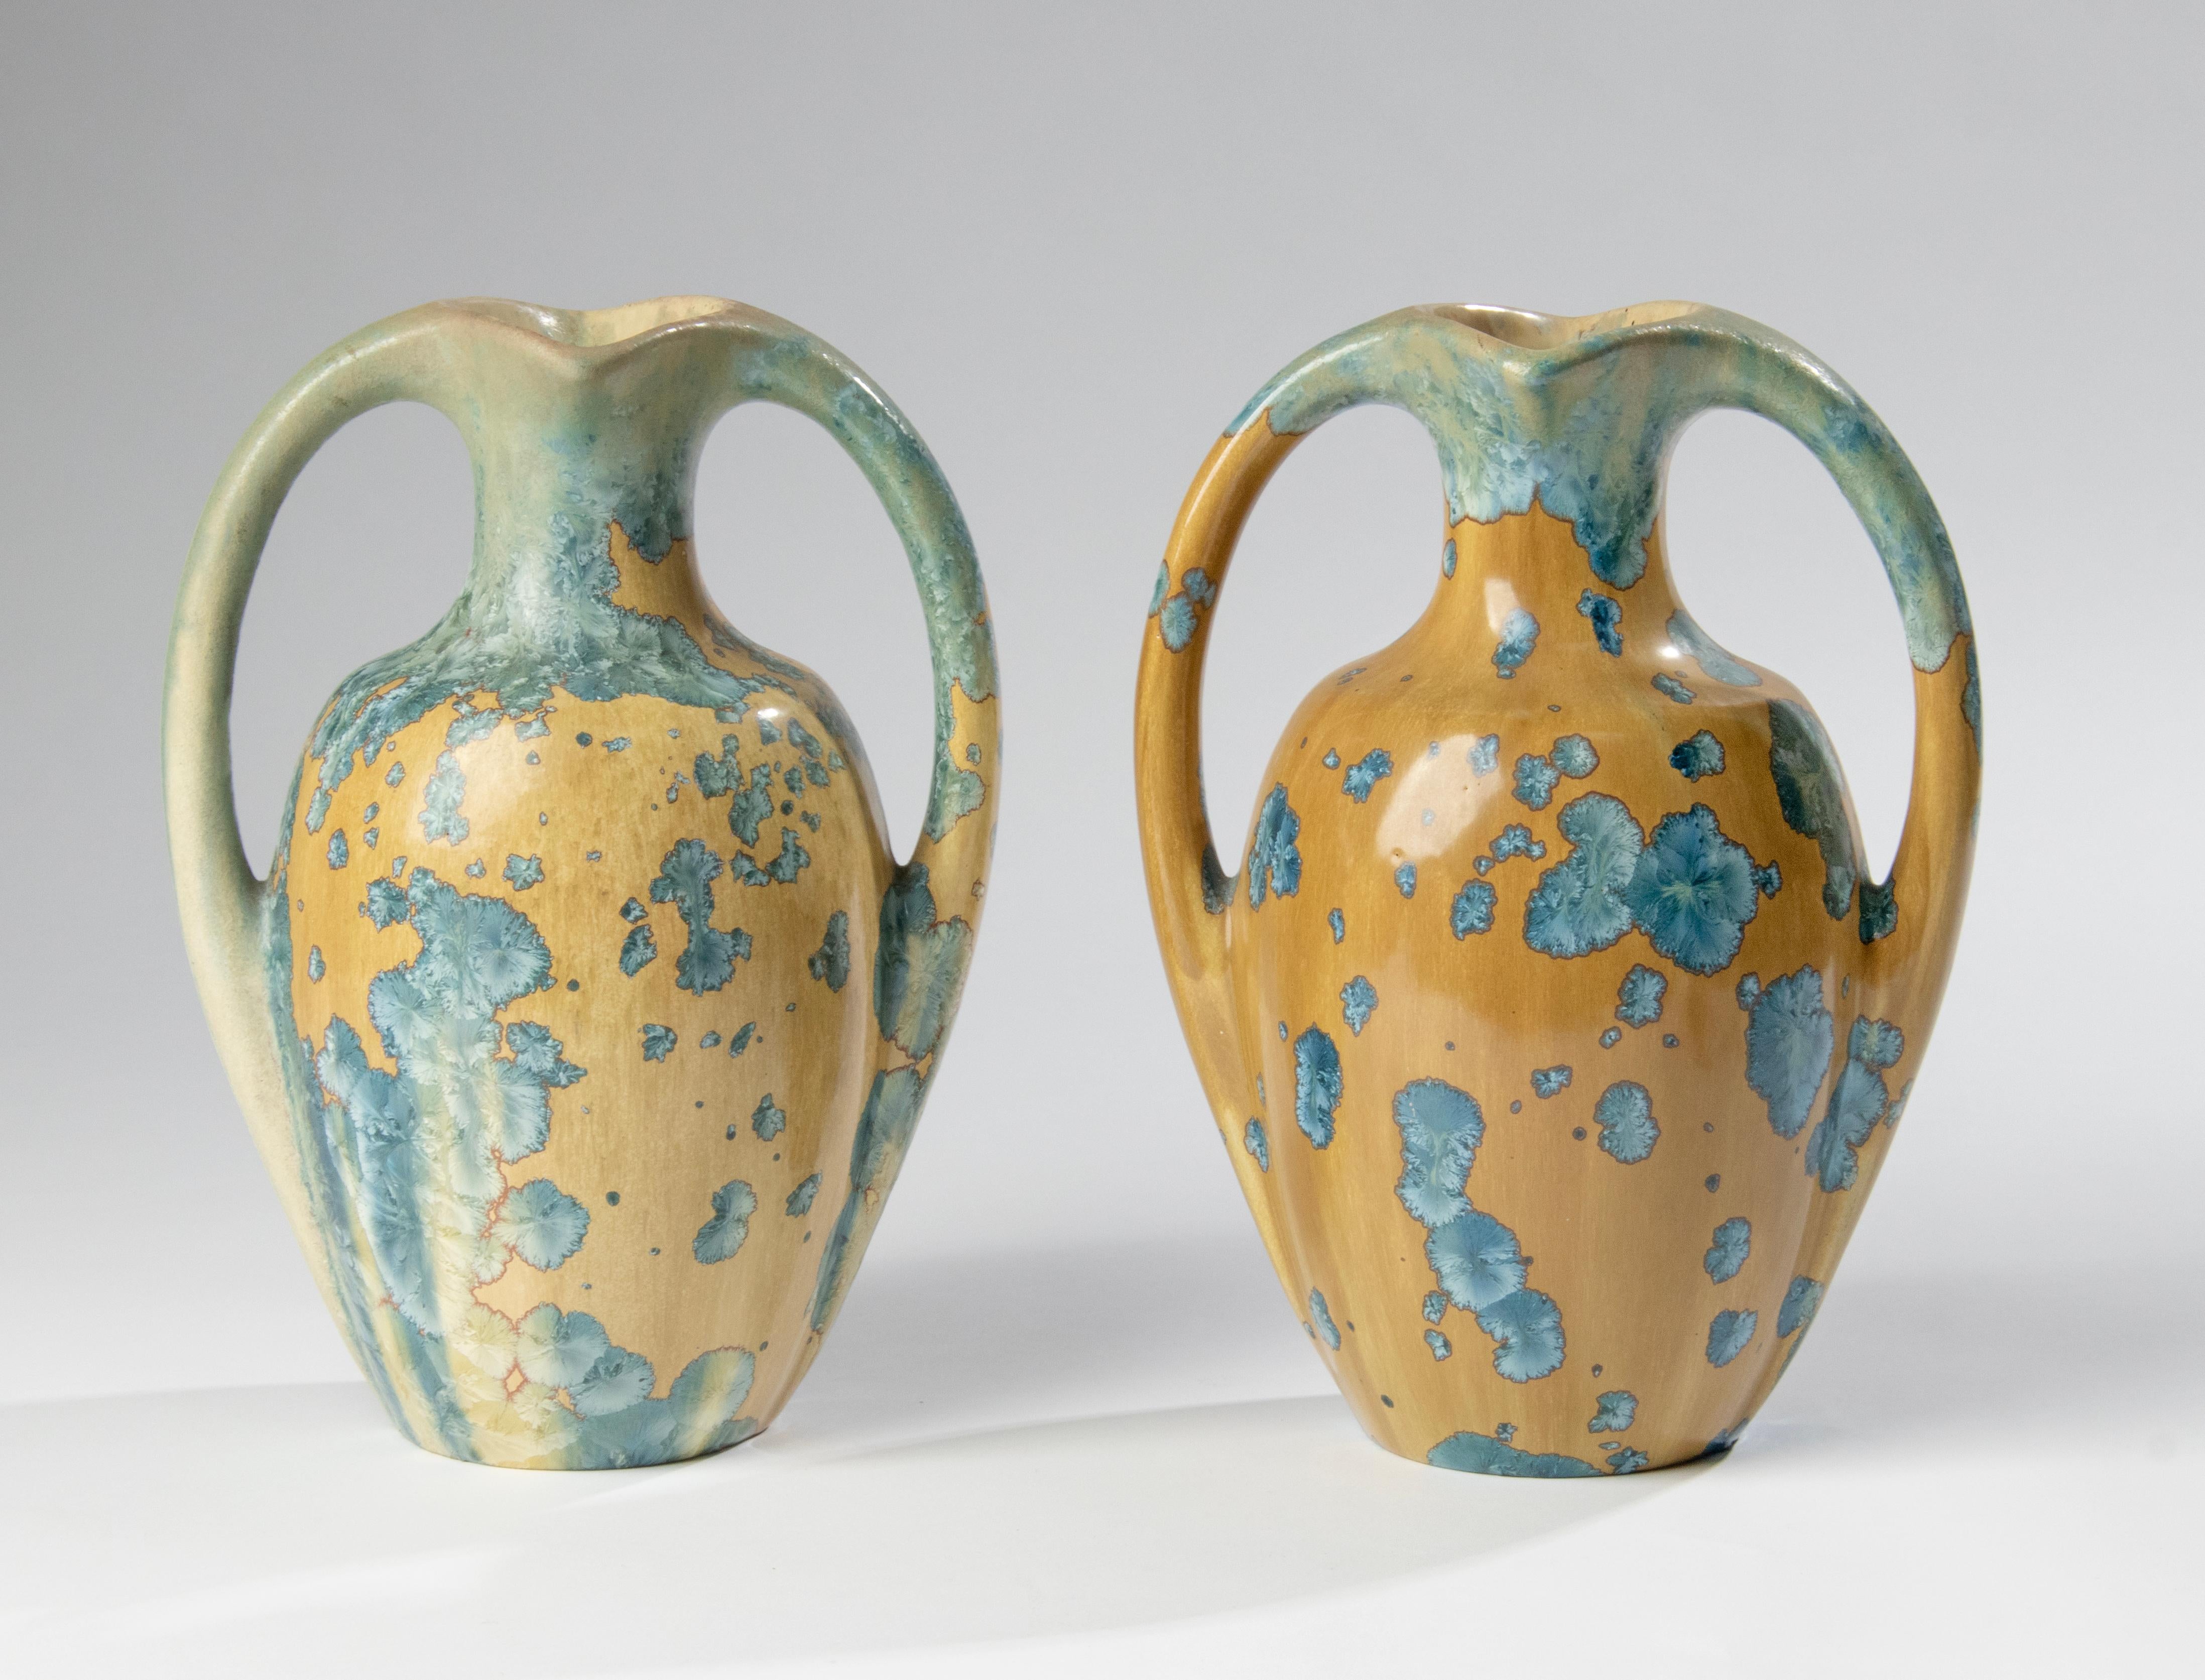 Une belle paire de deux vases Art Déco en céramique de La Faïencerie Héraldique de Pierrefonds Pottery of France. Les vases sont dotés de deux anses incurvées et décorés d'une glaçure brun doré avec des grappes cristallines bleu vif dispersées